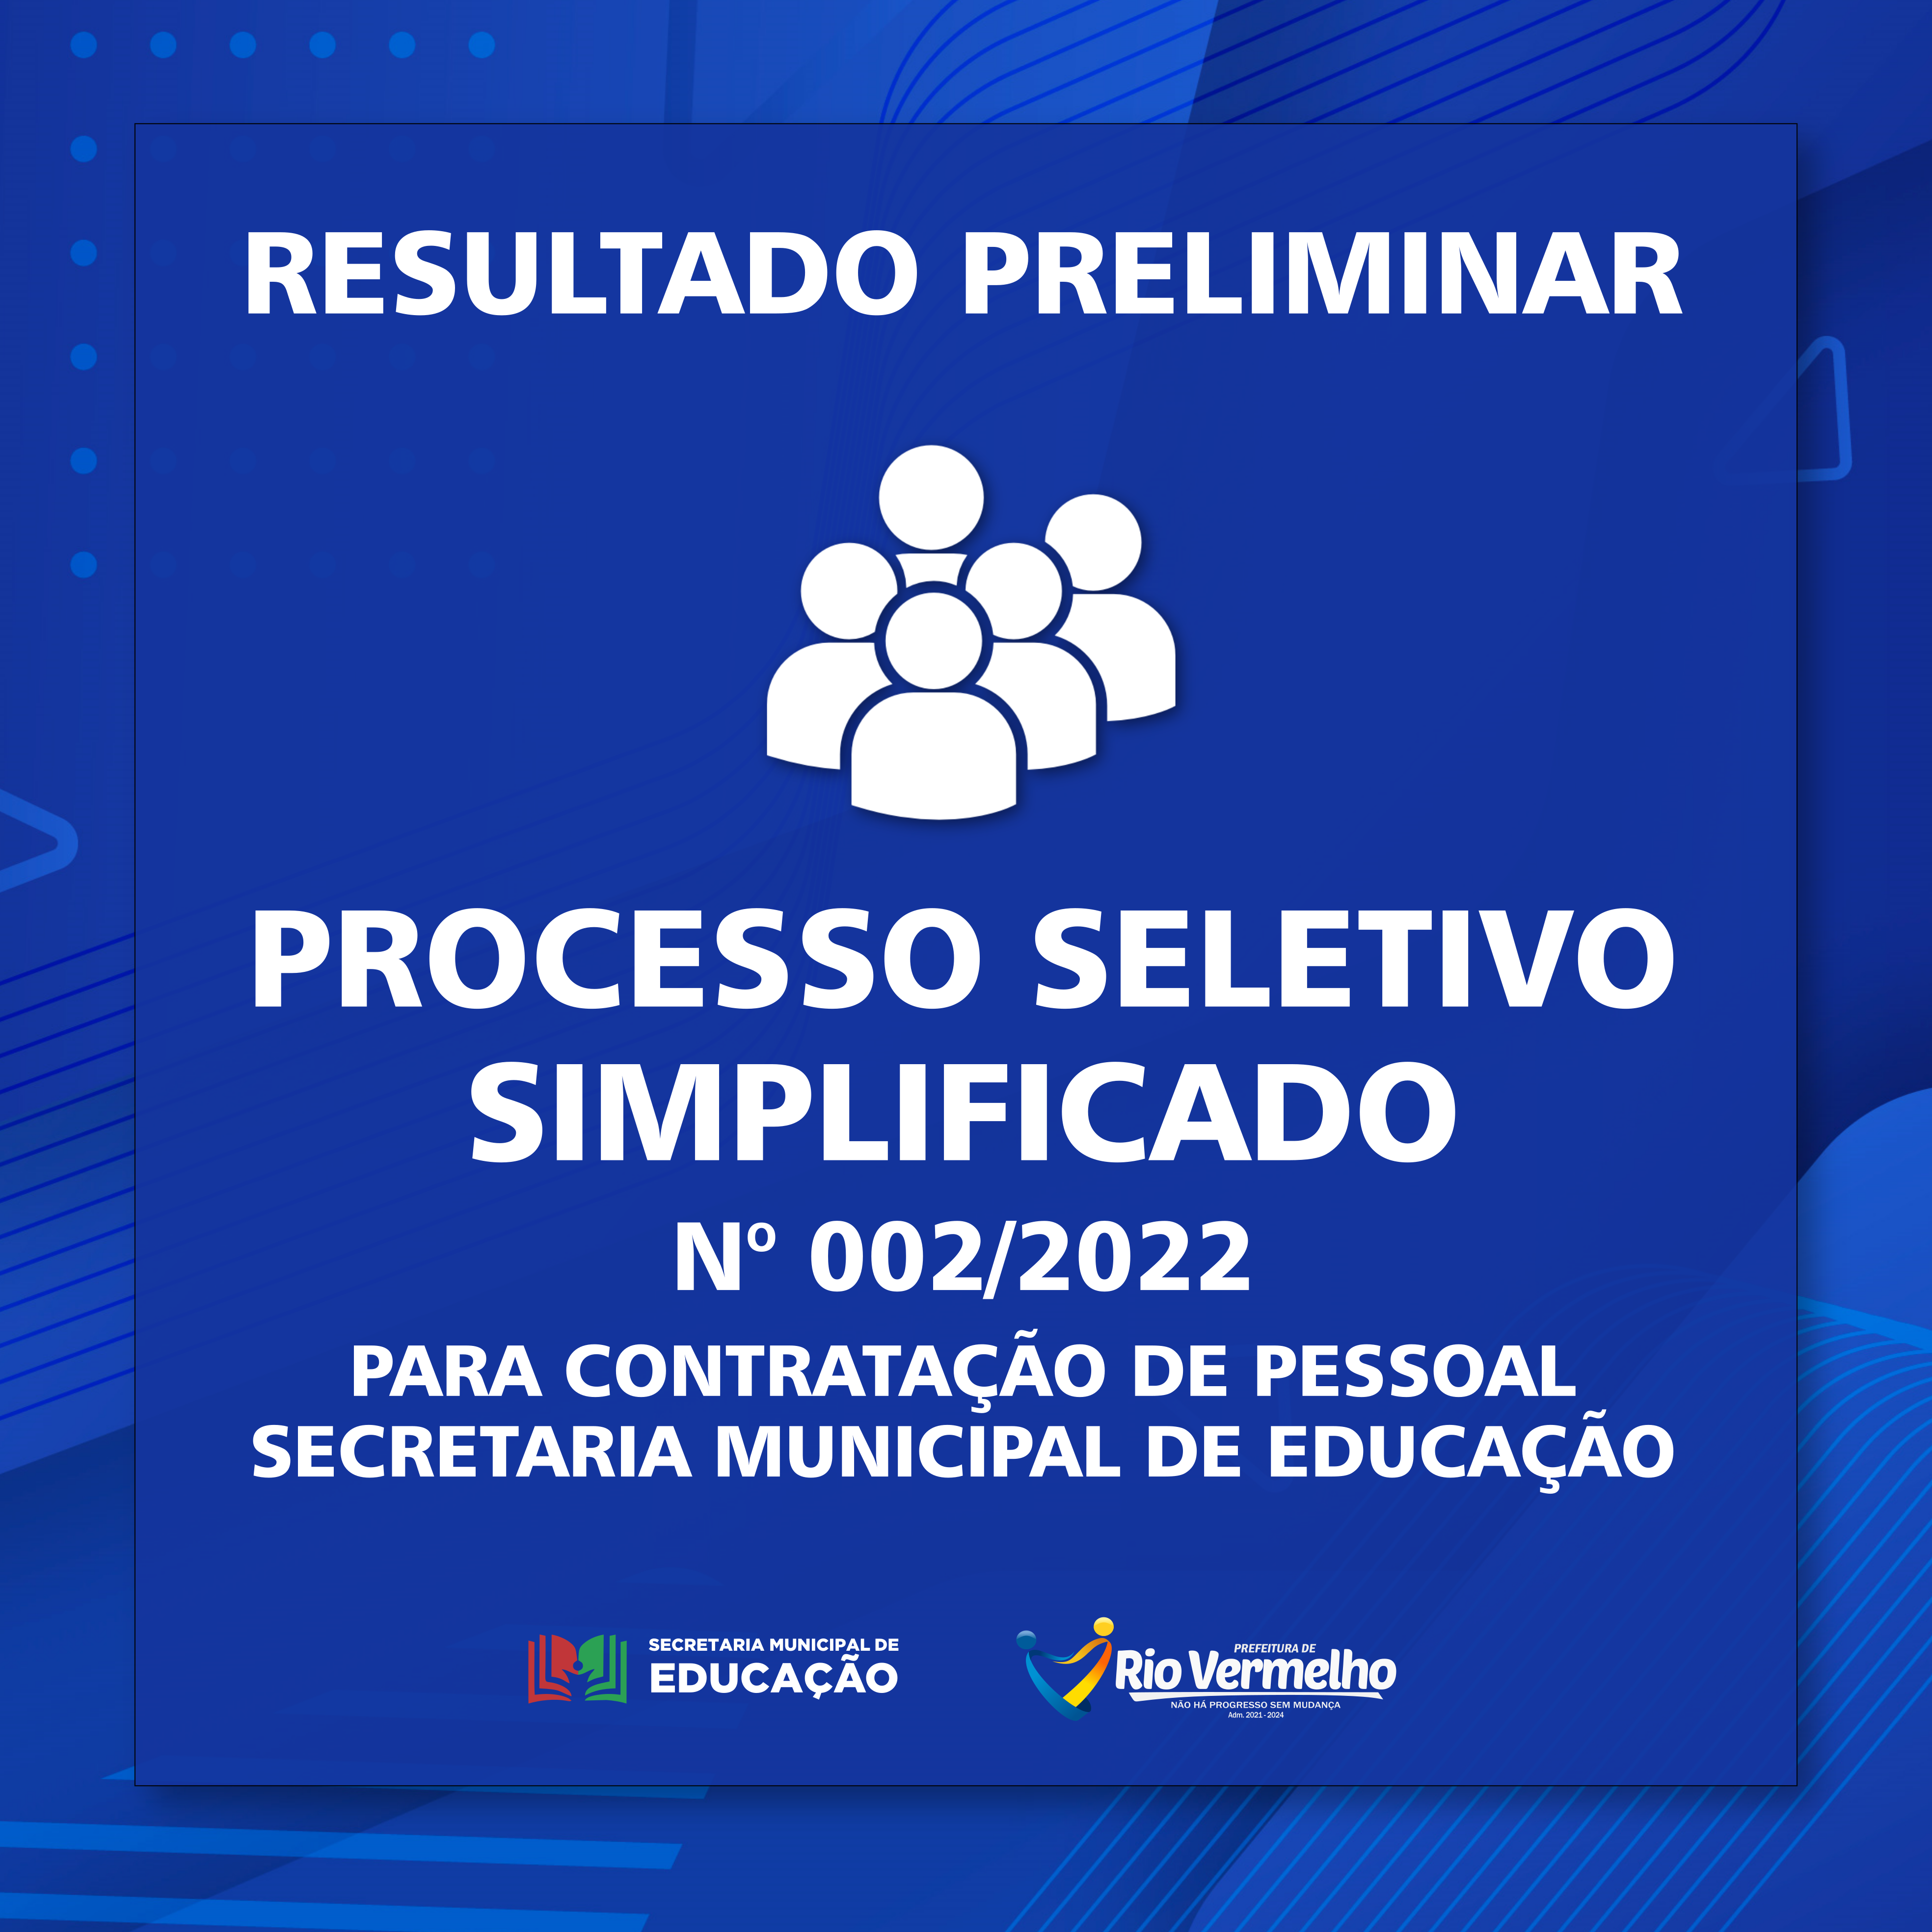 You are currently viewing RESULTADO PRELIMINAR DO PROCESSO SELETIVO SIMPLIFICADO Nº 002/2022 – SECRETARIA MUNICIPAL DE EDUCAÇÃO